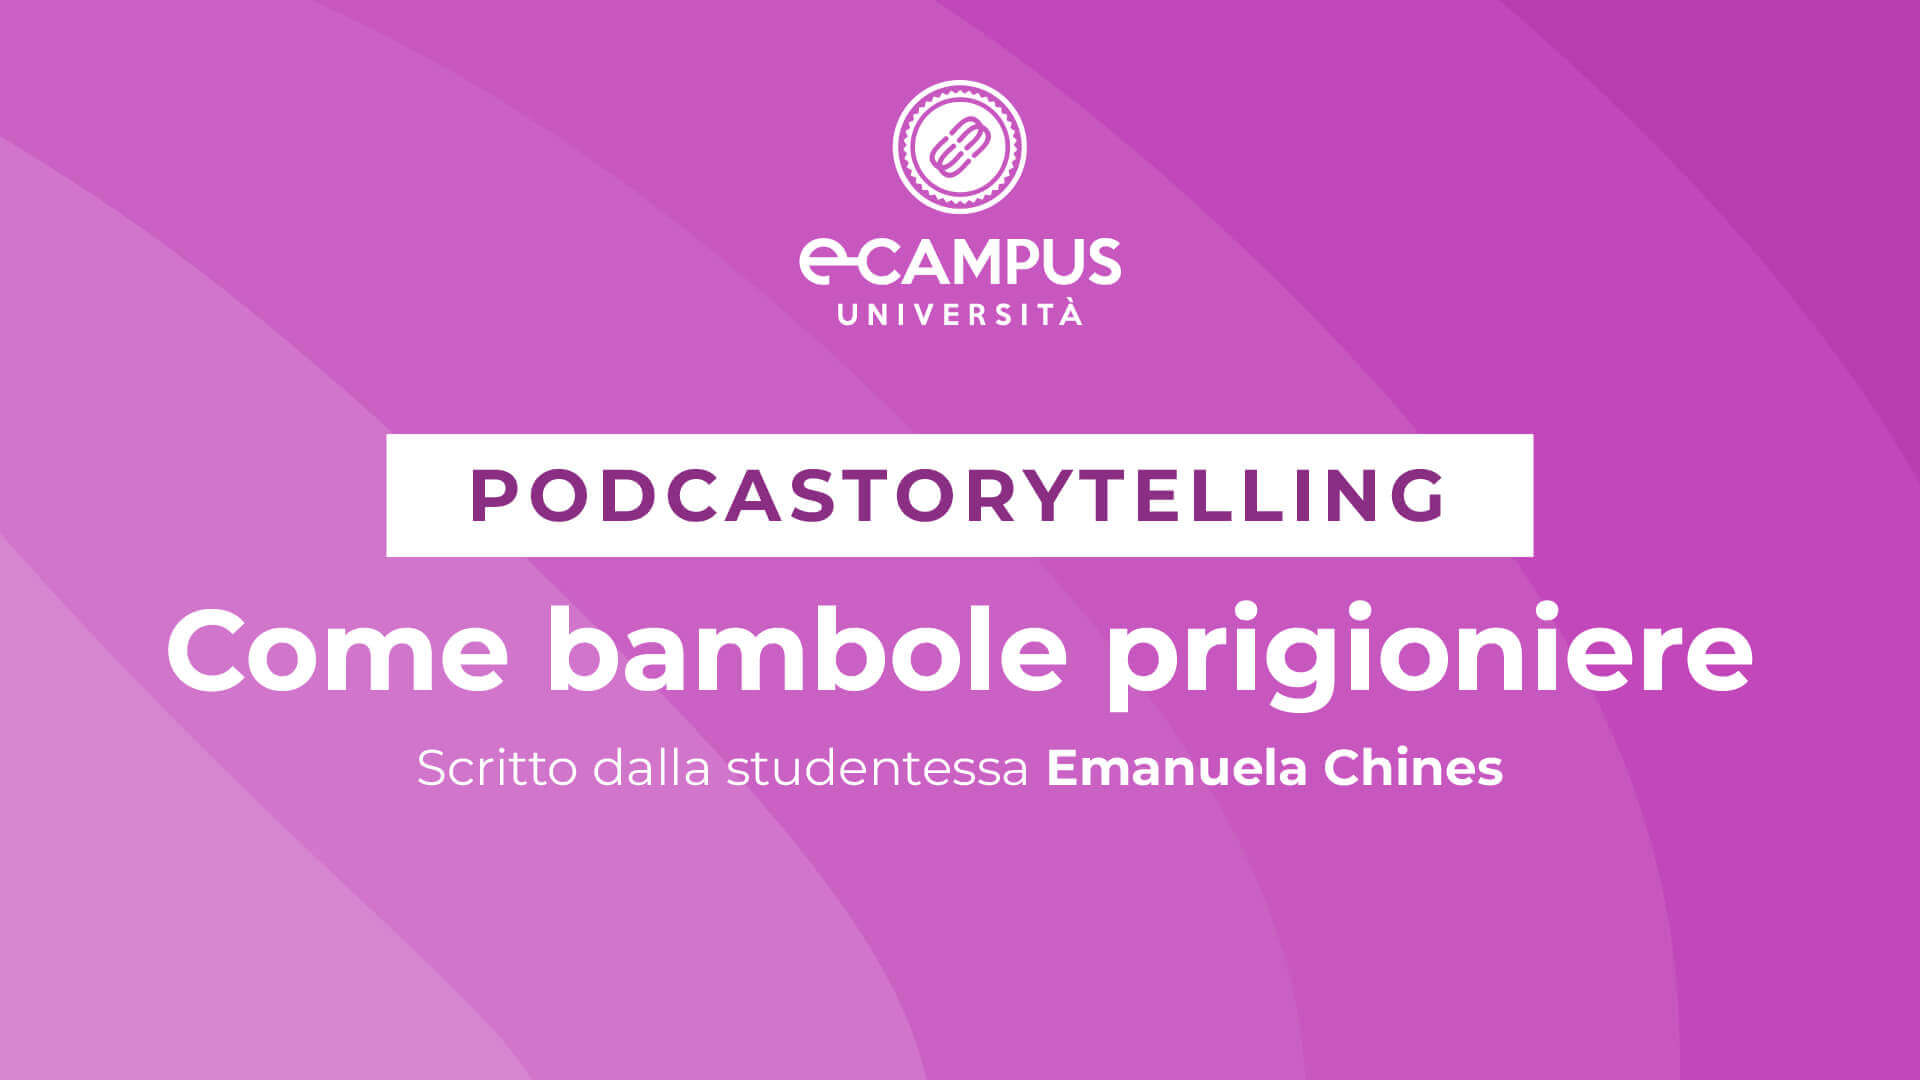 podcastorytelling come bambole prigioniere ecampus